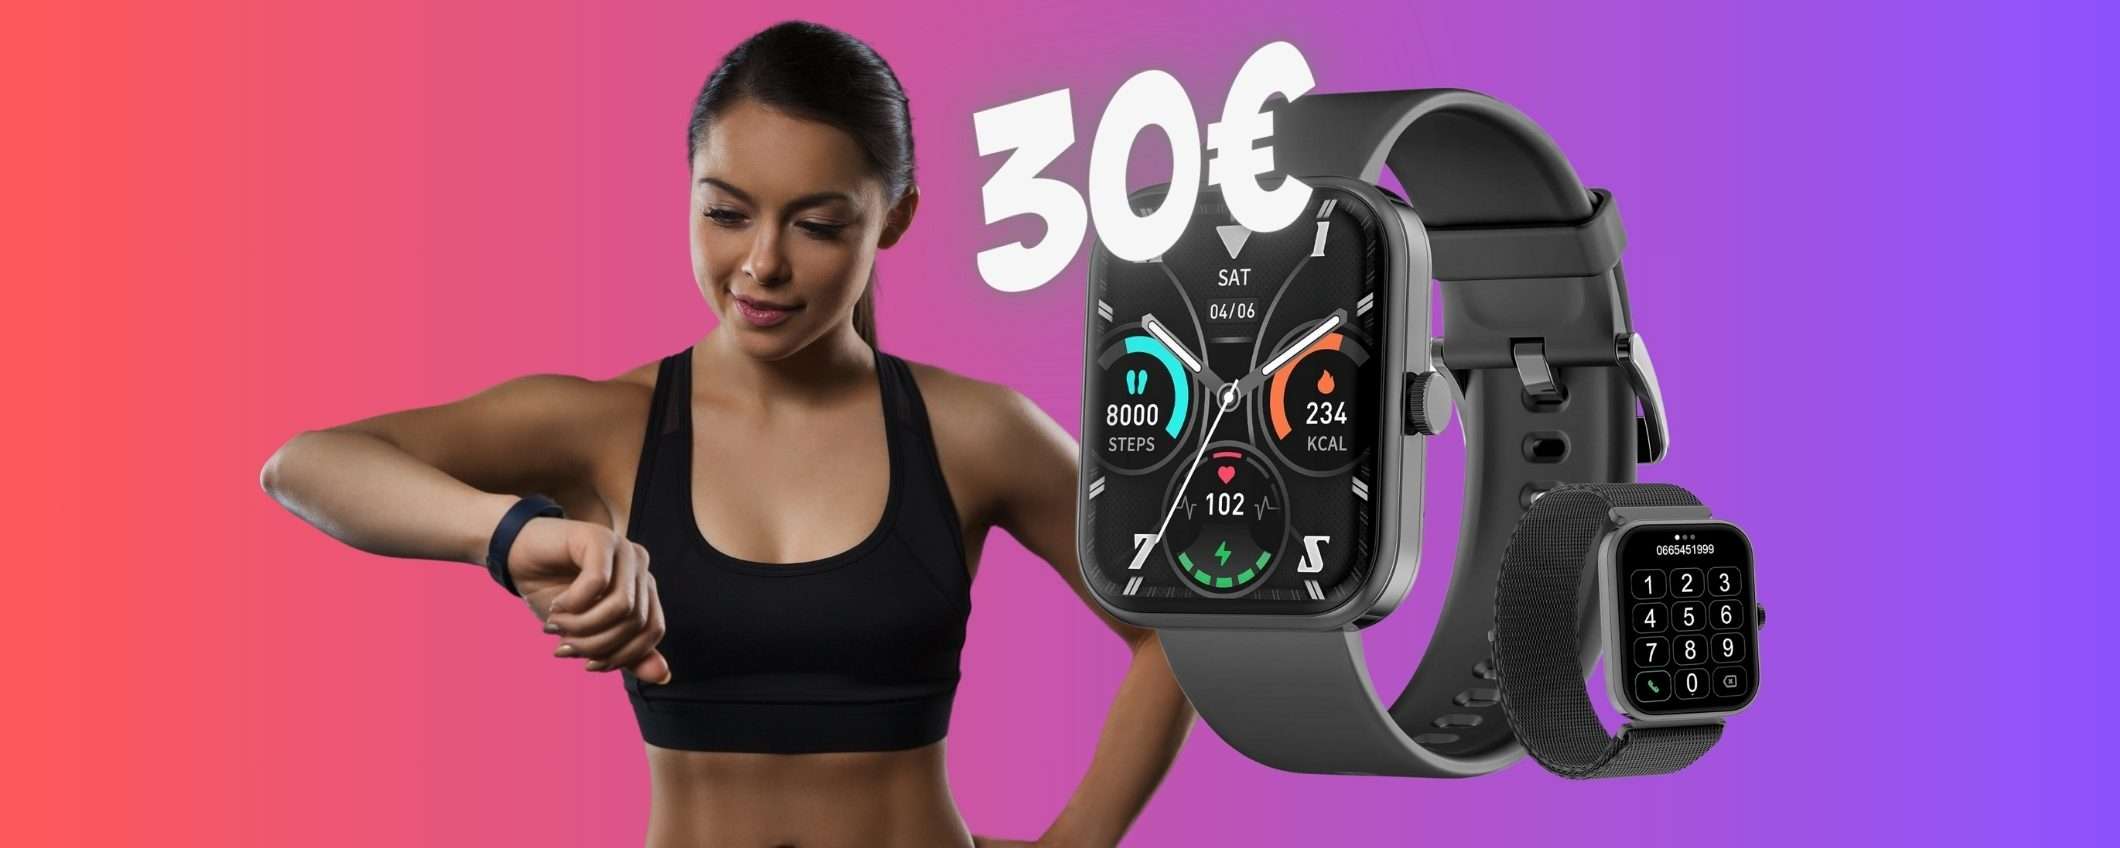 Smartwatch per chiamate, fitness e monitoraggio salute a soli 30€